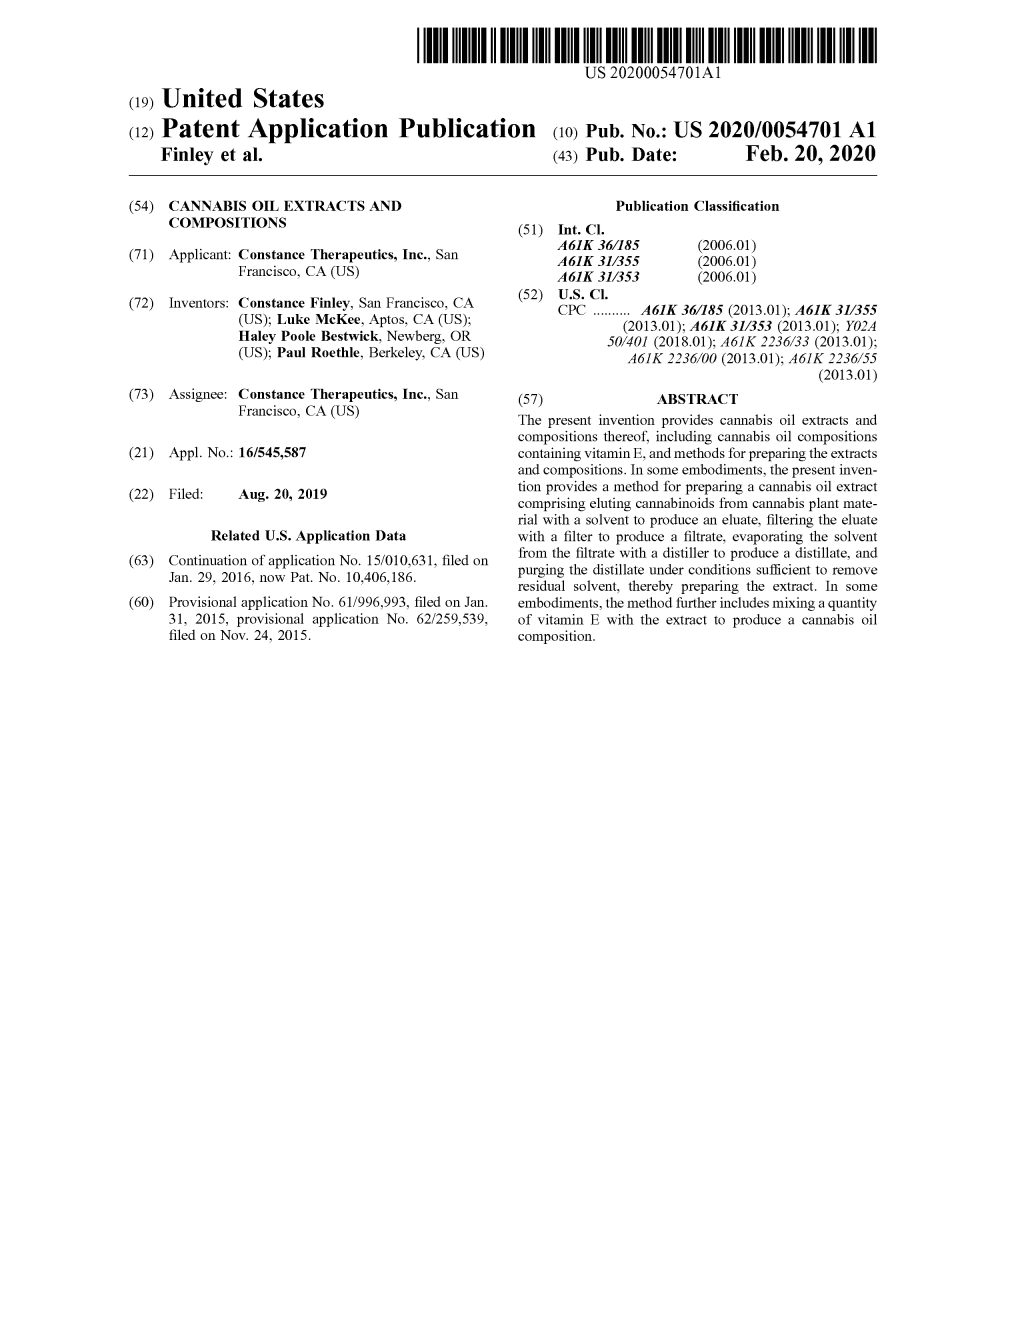 ( 12 ) Patent Application Publication ( 10 ) Pub . No .: US 2020/0054701 A1